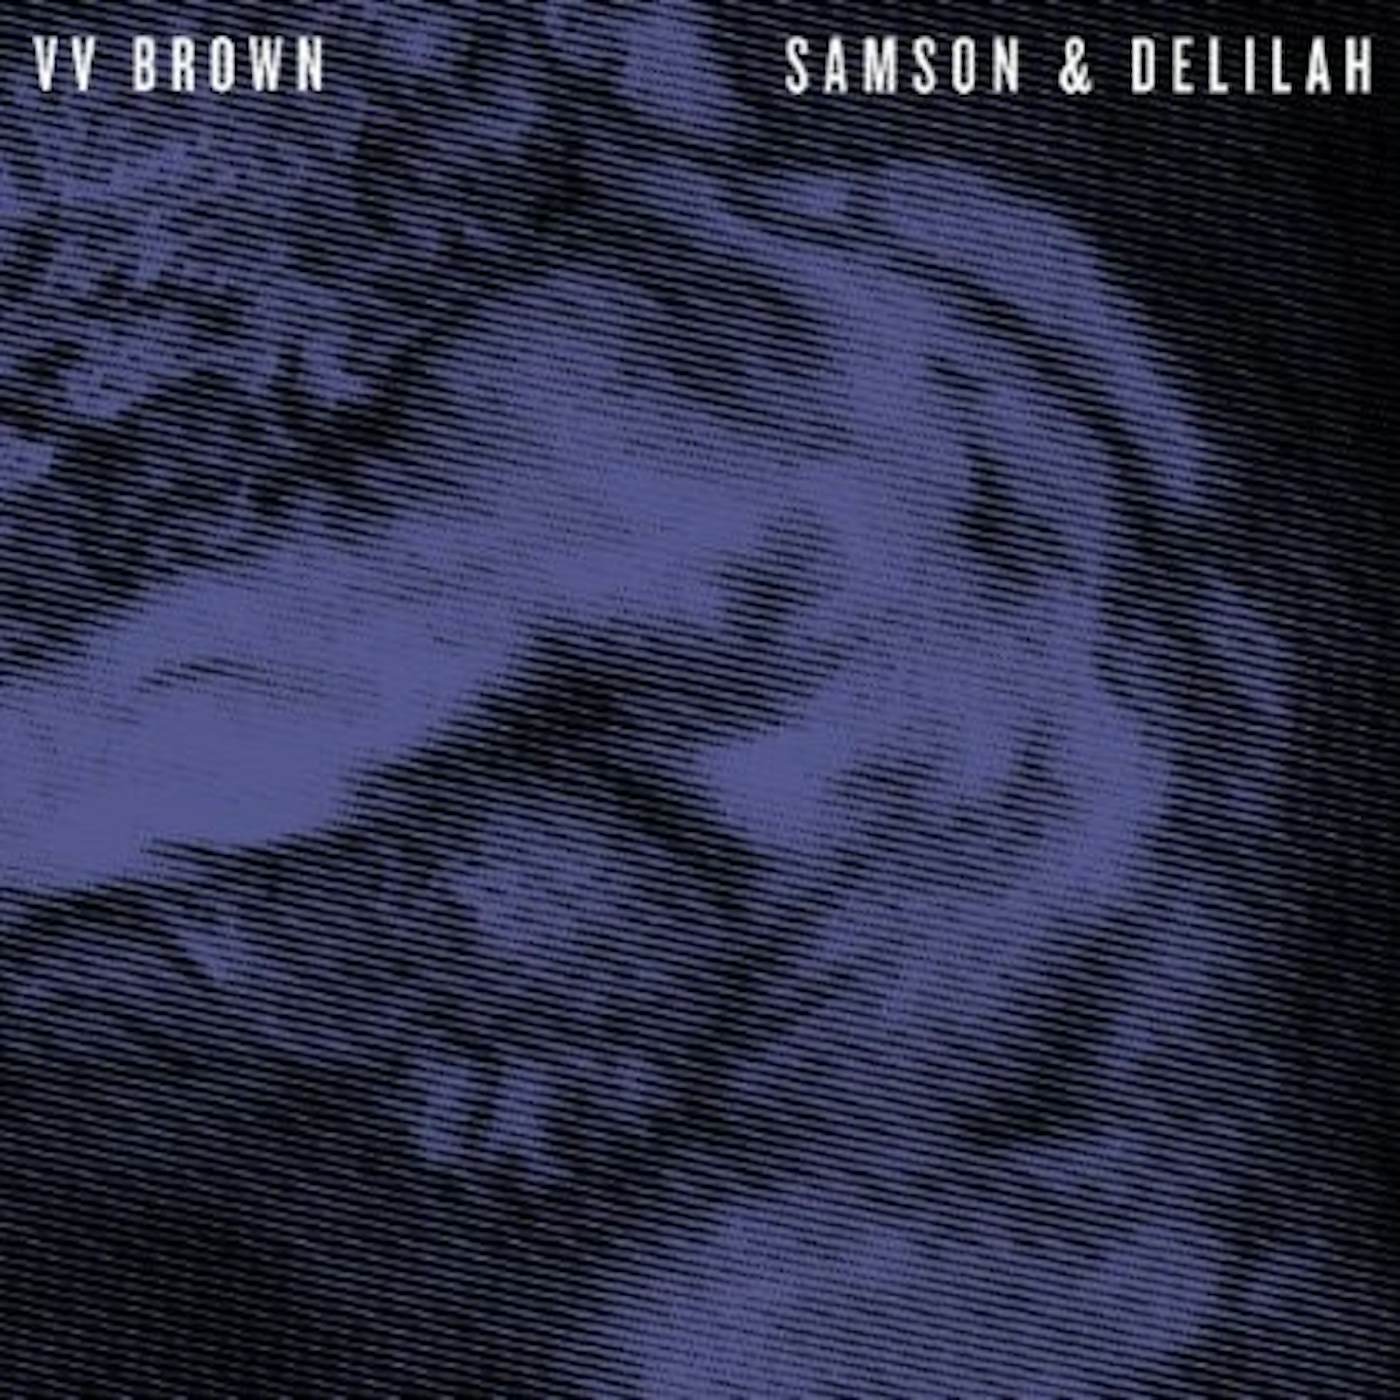 V V Brown SAMSON & DELILAH CD